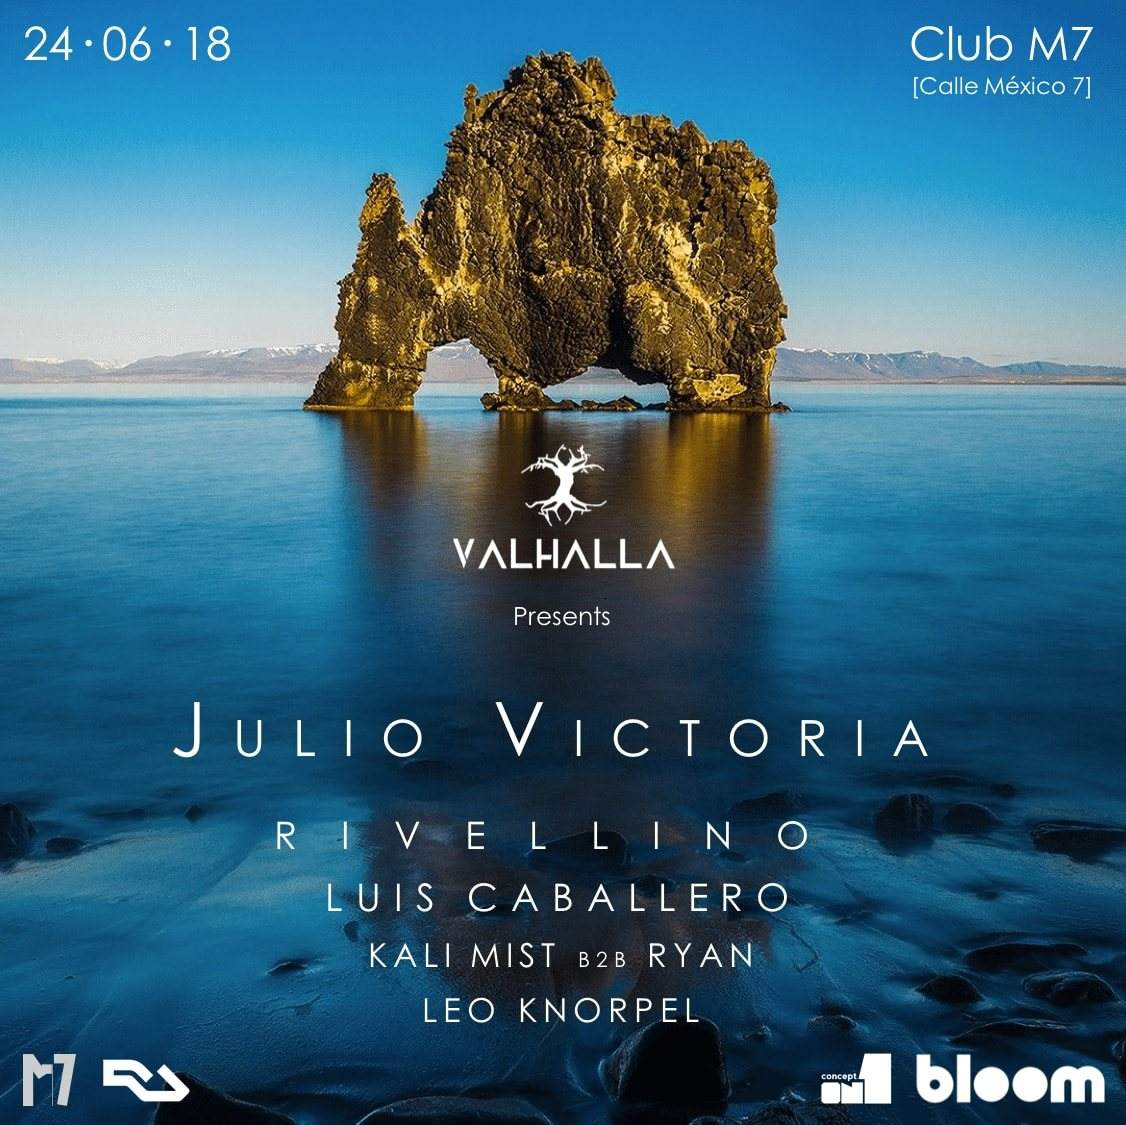 Valhalla presents [Julio Victoria] - フライヤー表